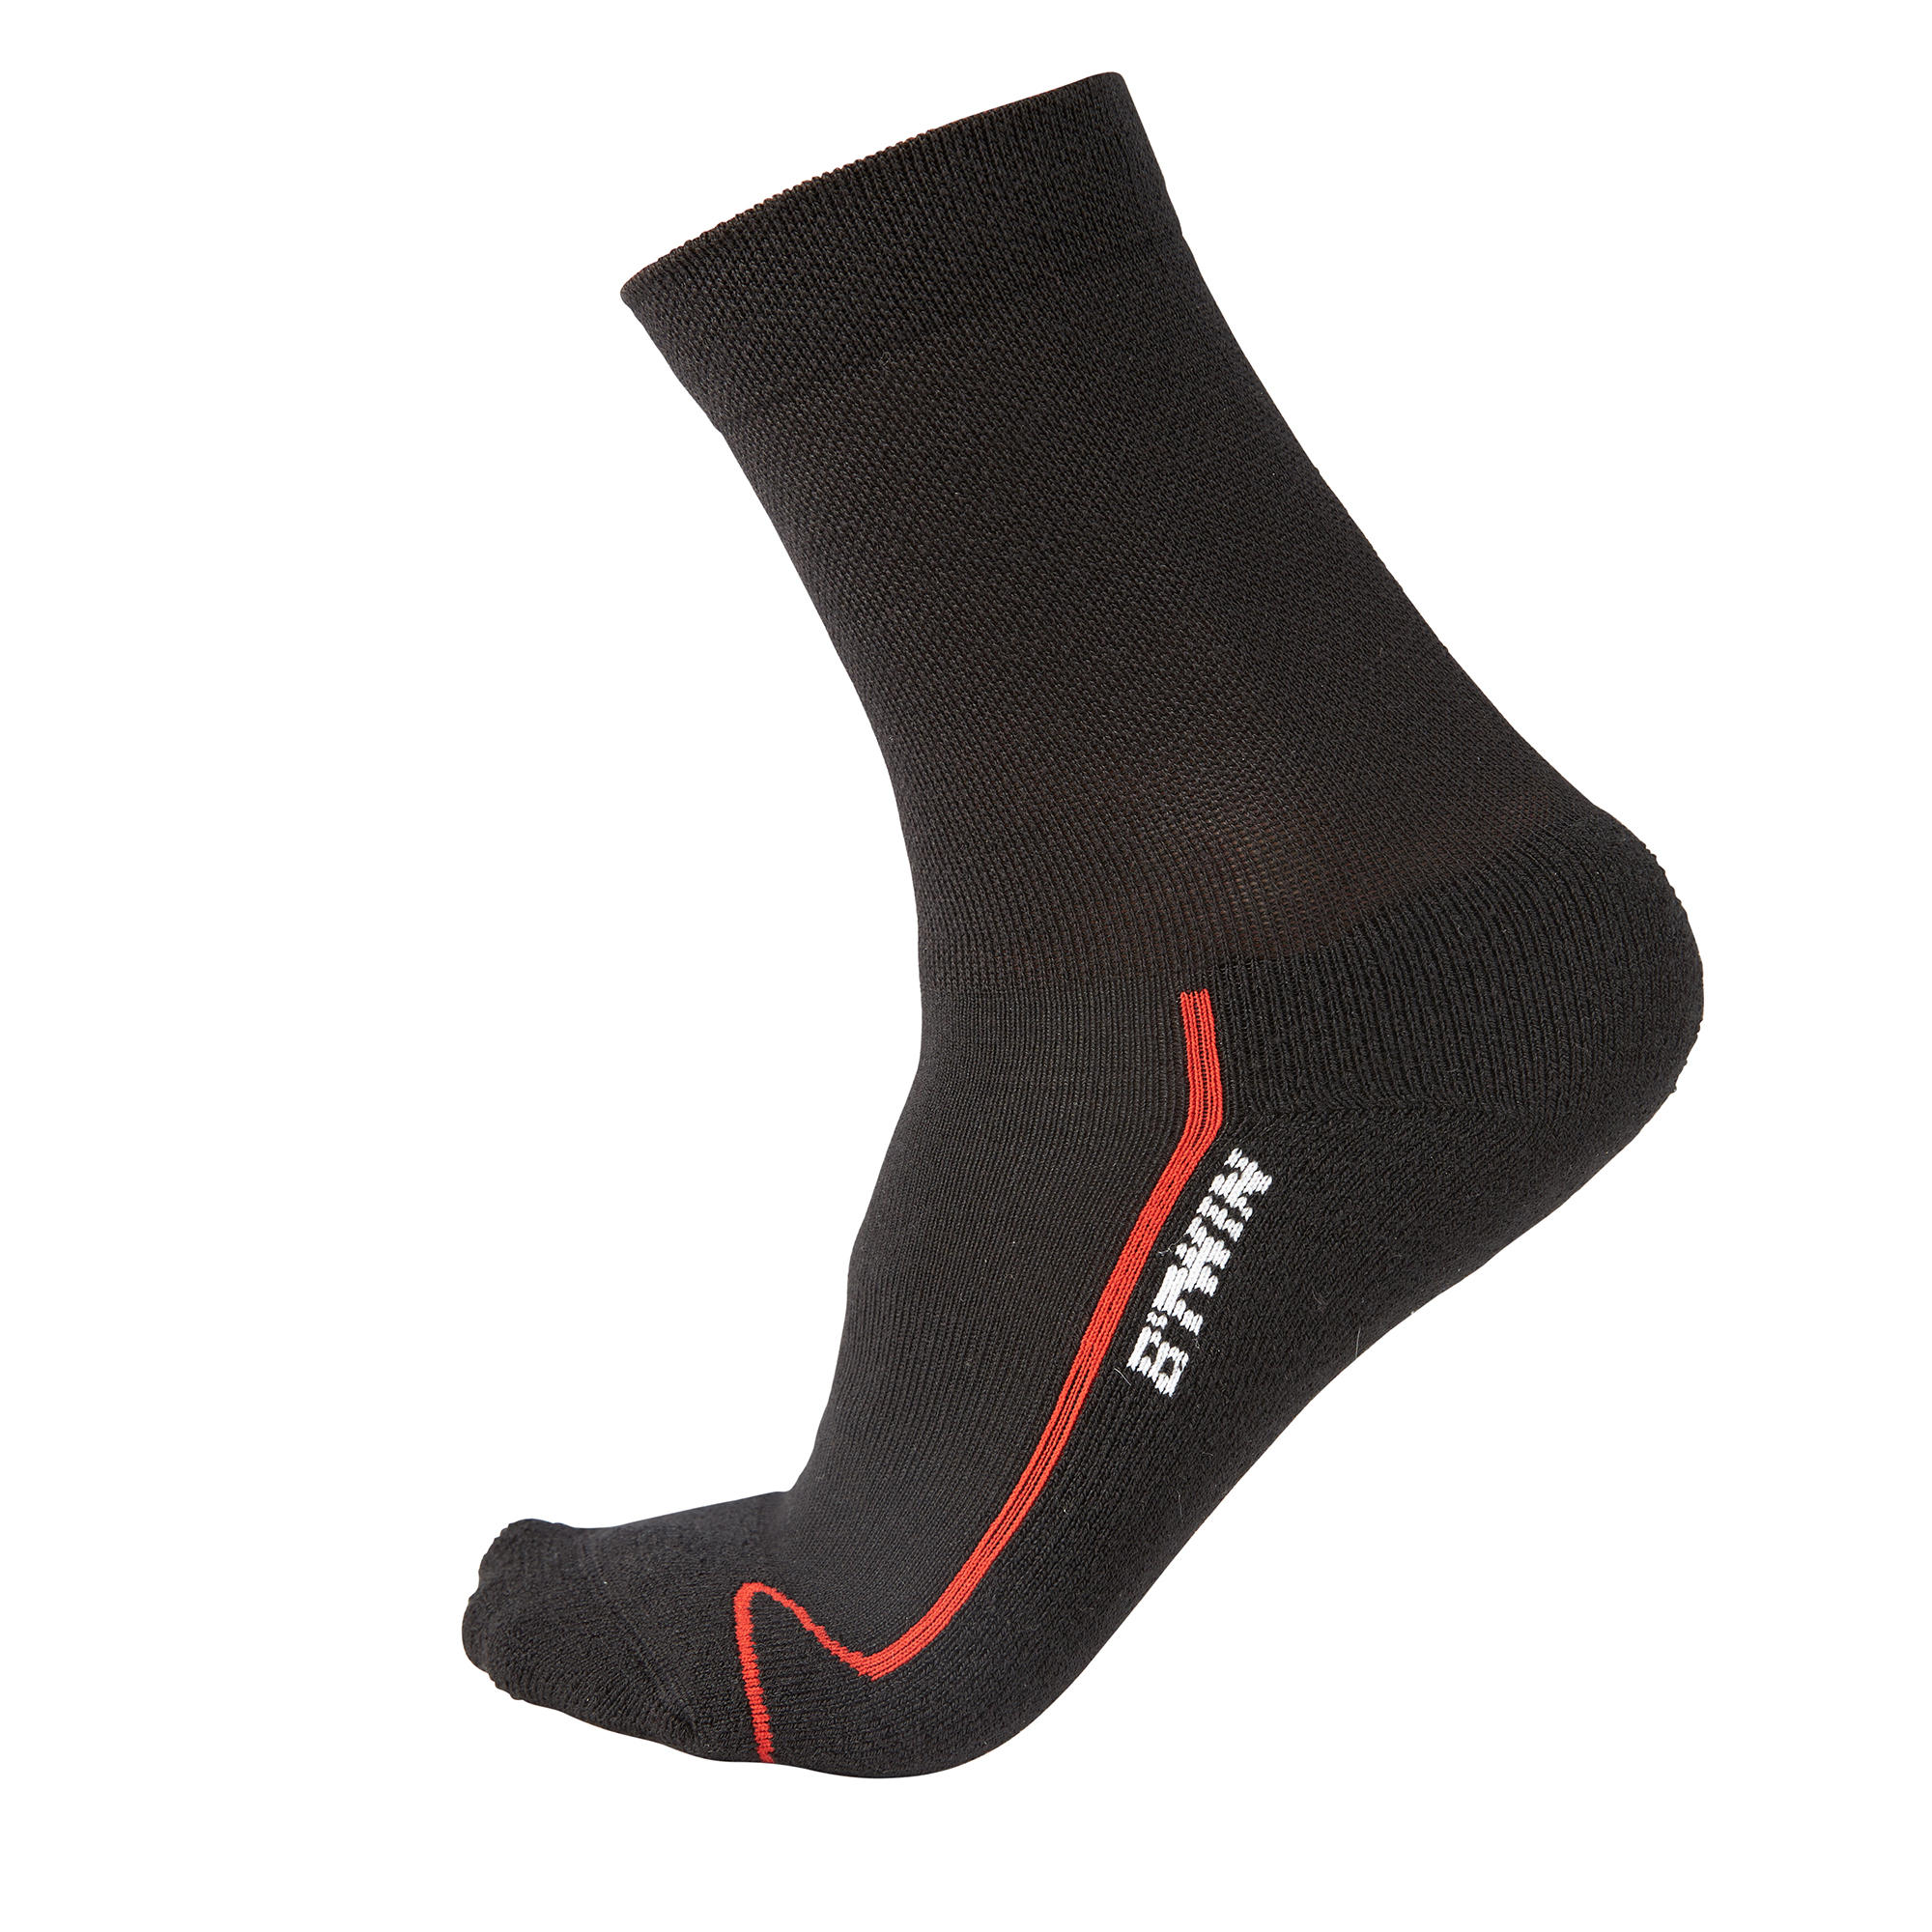 VAN RYSEL 500 Winter Cycling Socks 2-Pack - Black/Red